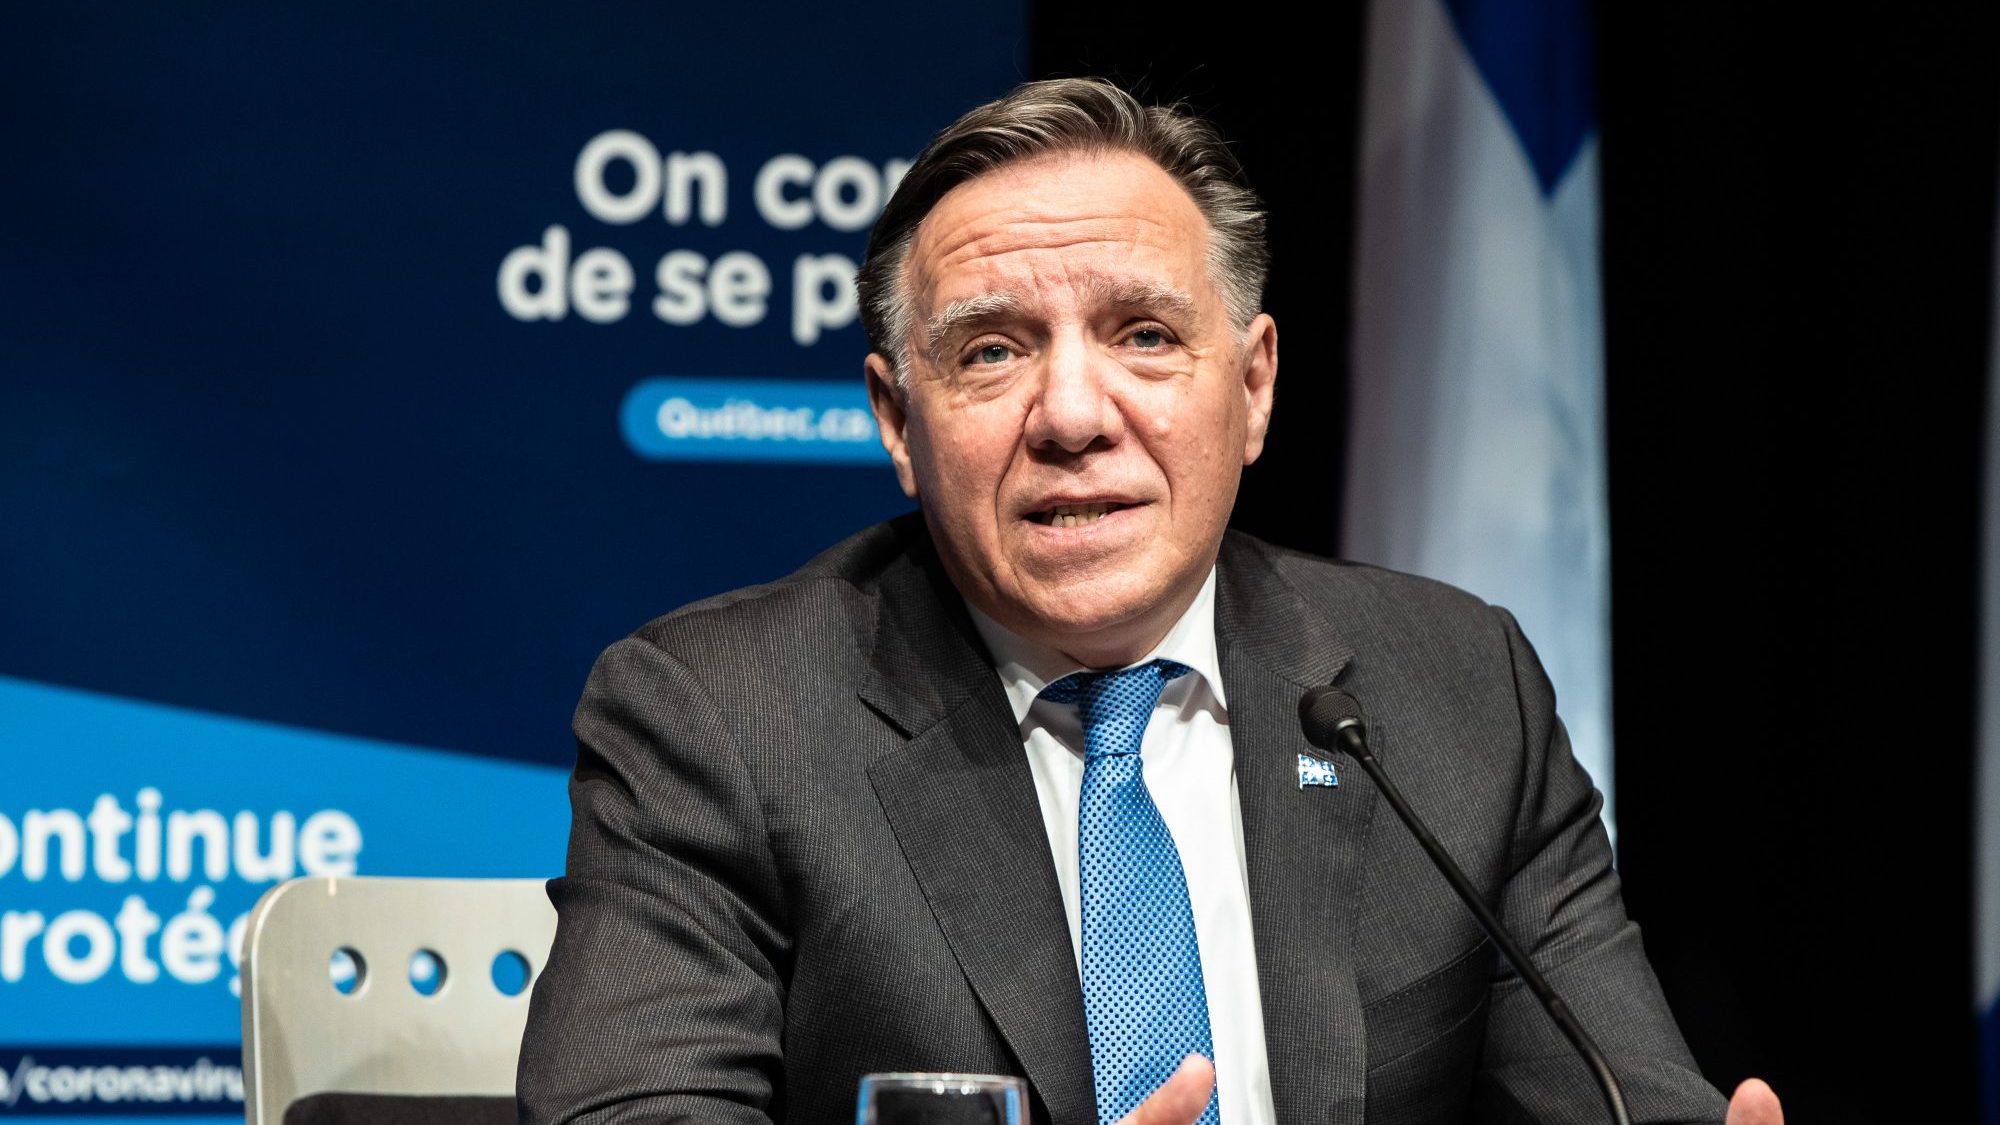 Le premier ministre François Legault